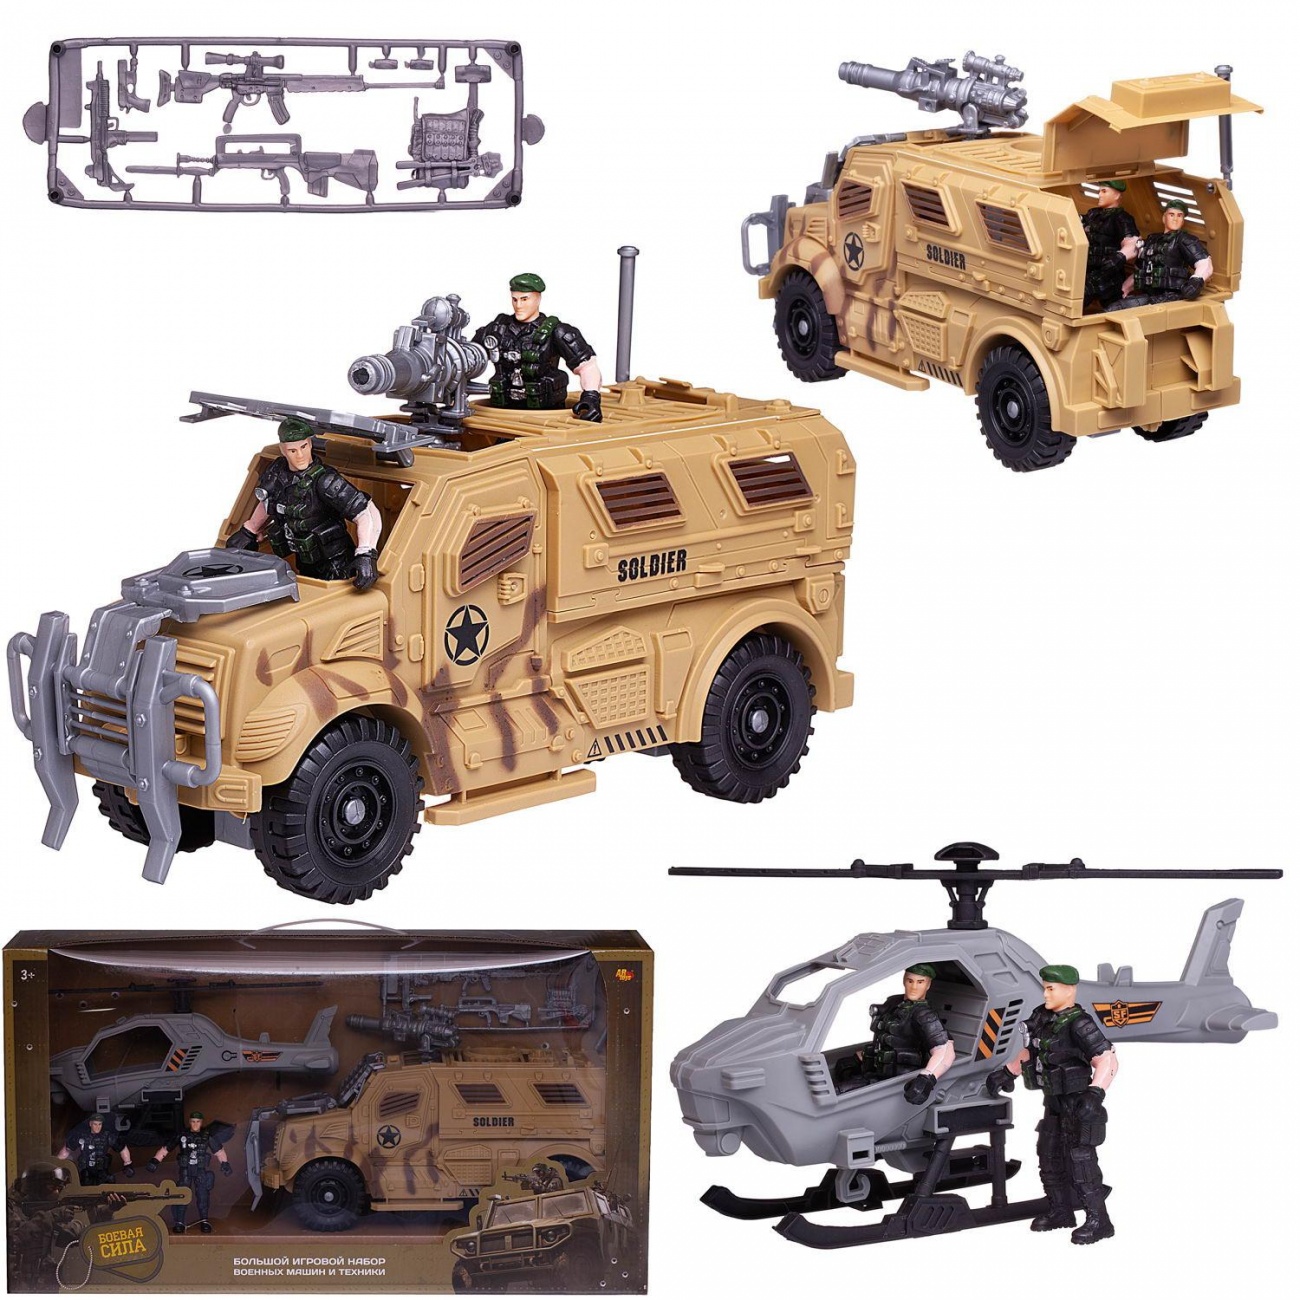 Игровой набор Abtoys Боевая сила: боевая машина, вертолет, 2 фигурки солдат PT-01665